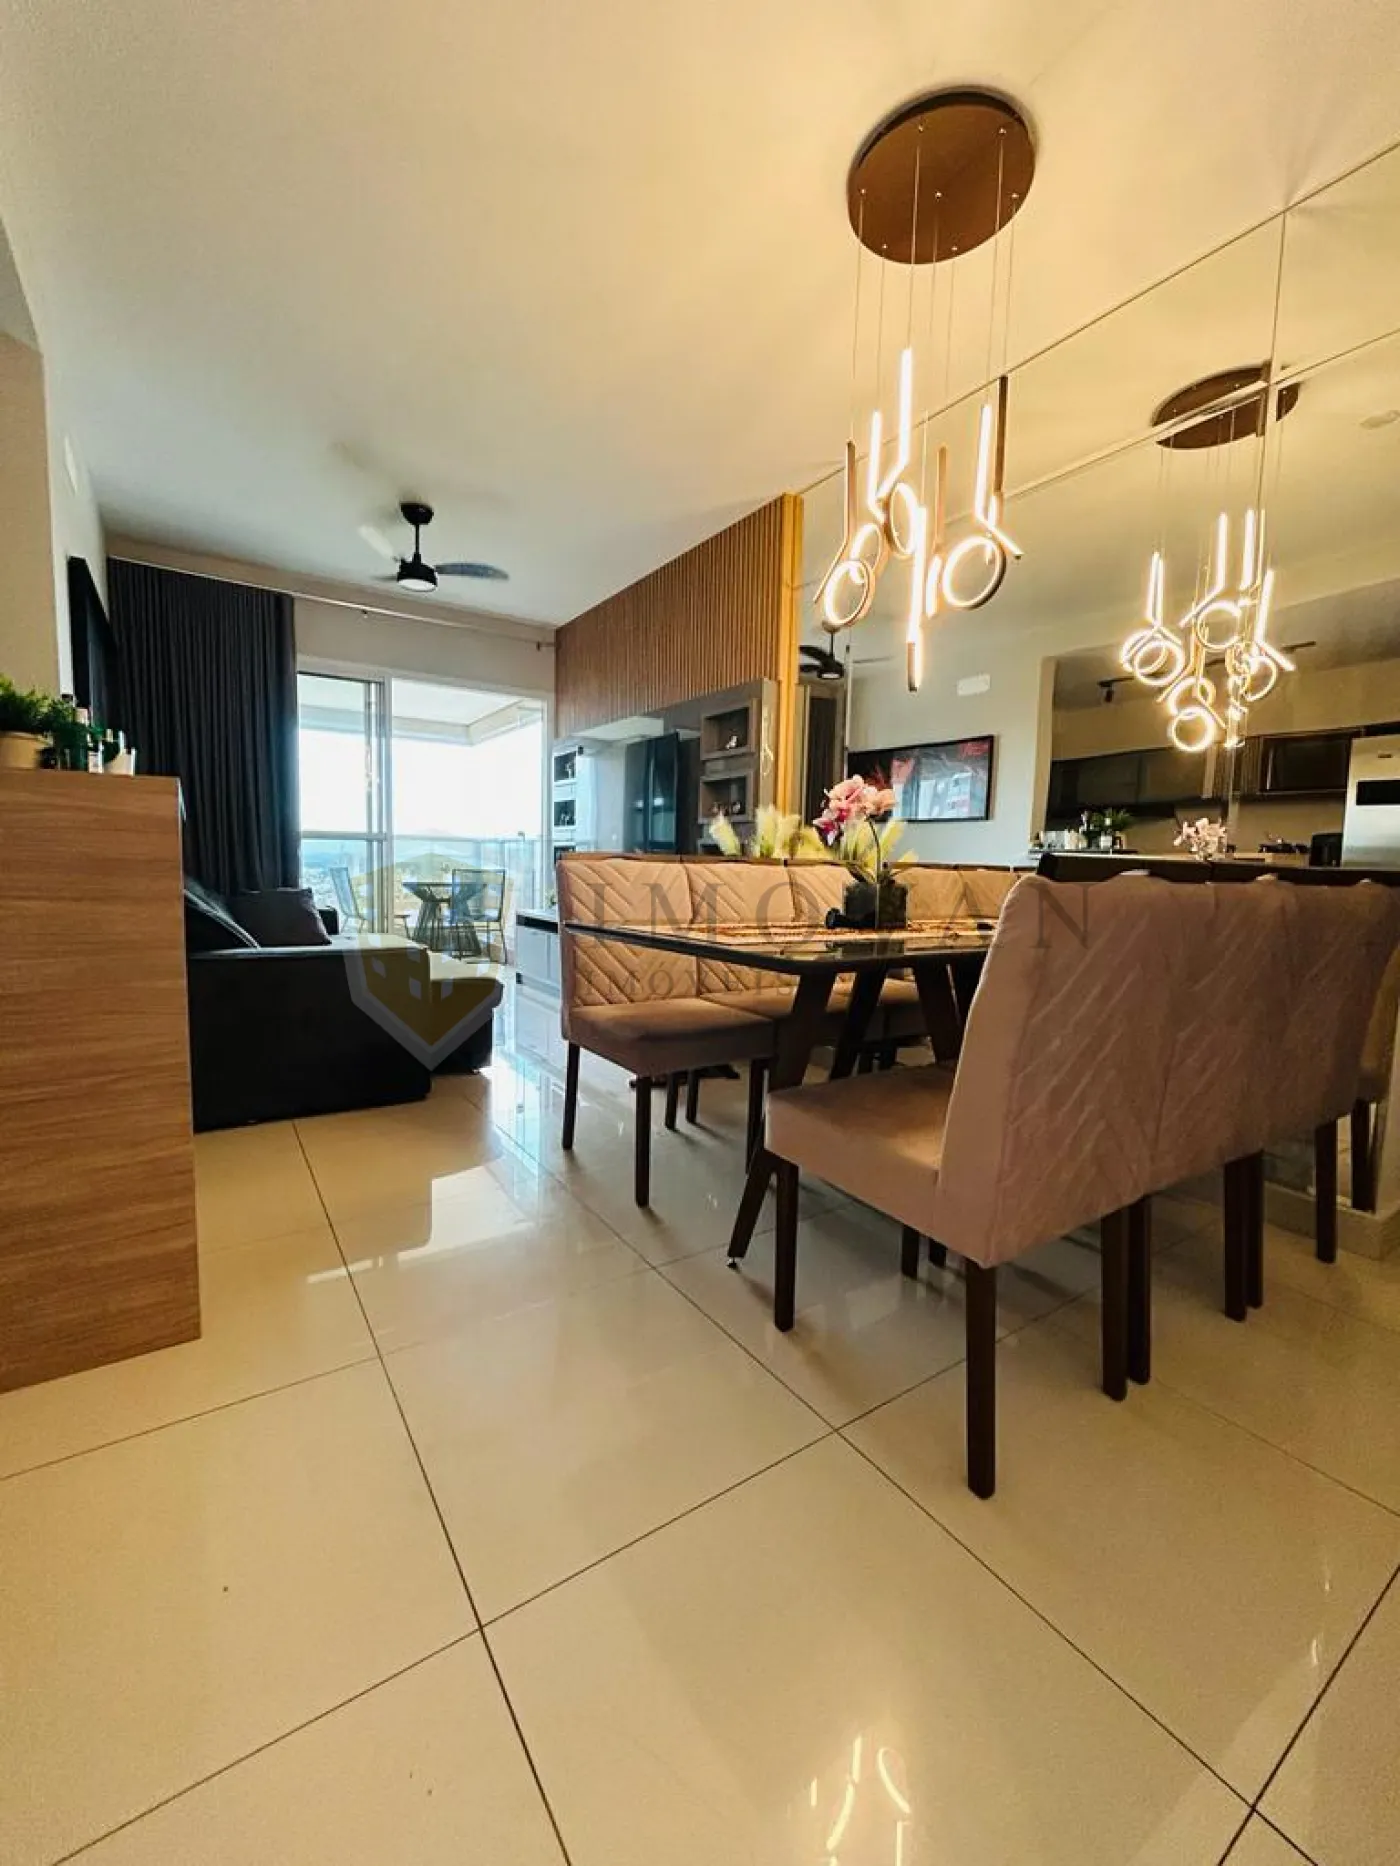 Comprar Apartamento / Padrão em Ribeirão Preto R$ 725.000,00 - Foto 3